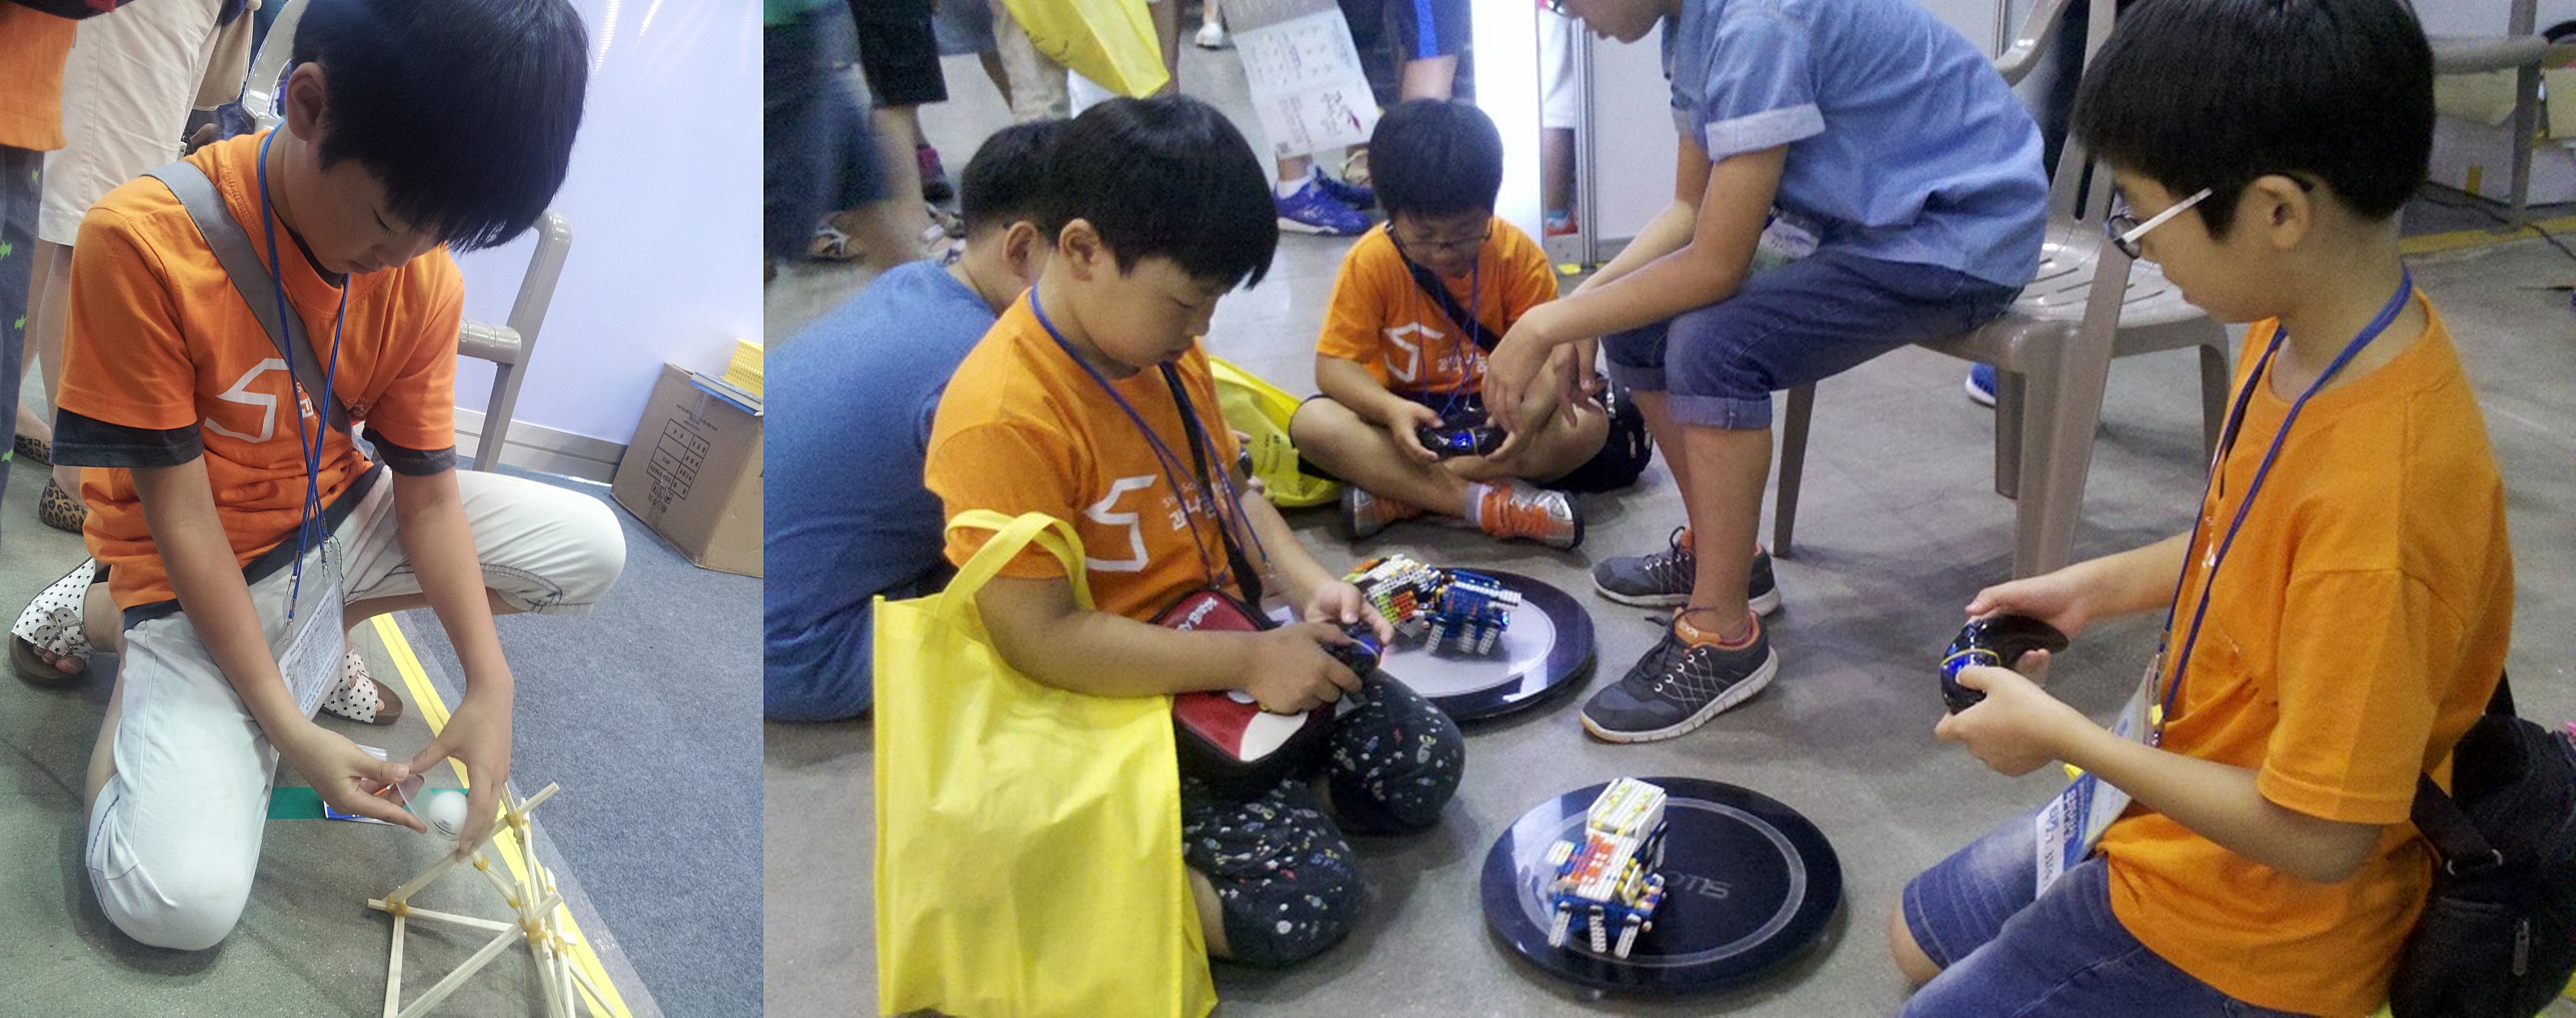 2013 대한민국 과학창의축전 부스 체험활동에 참여 중인 모습